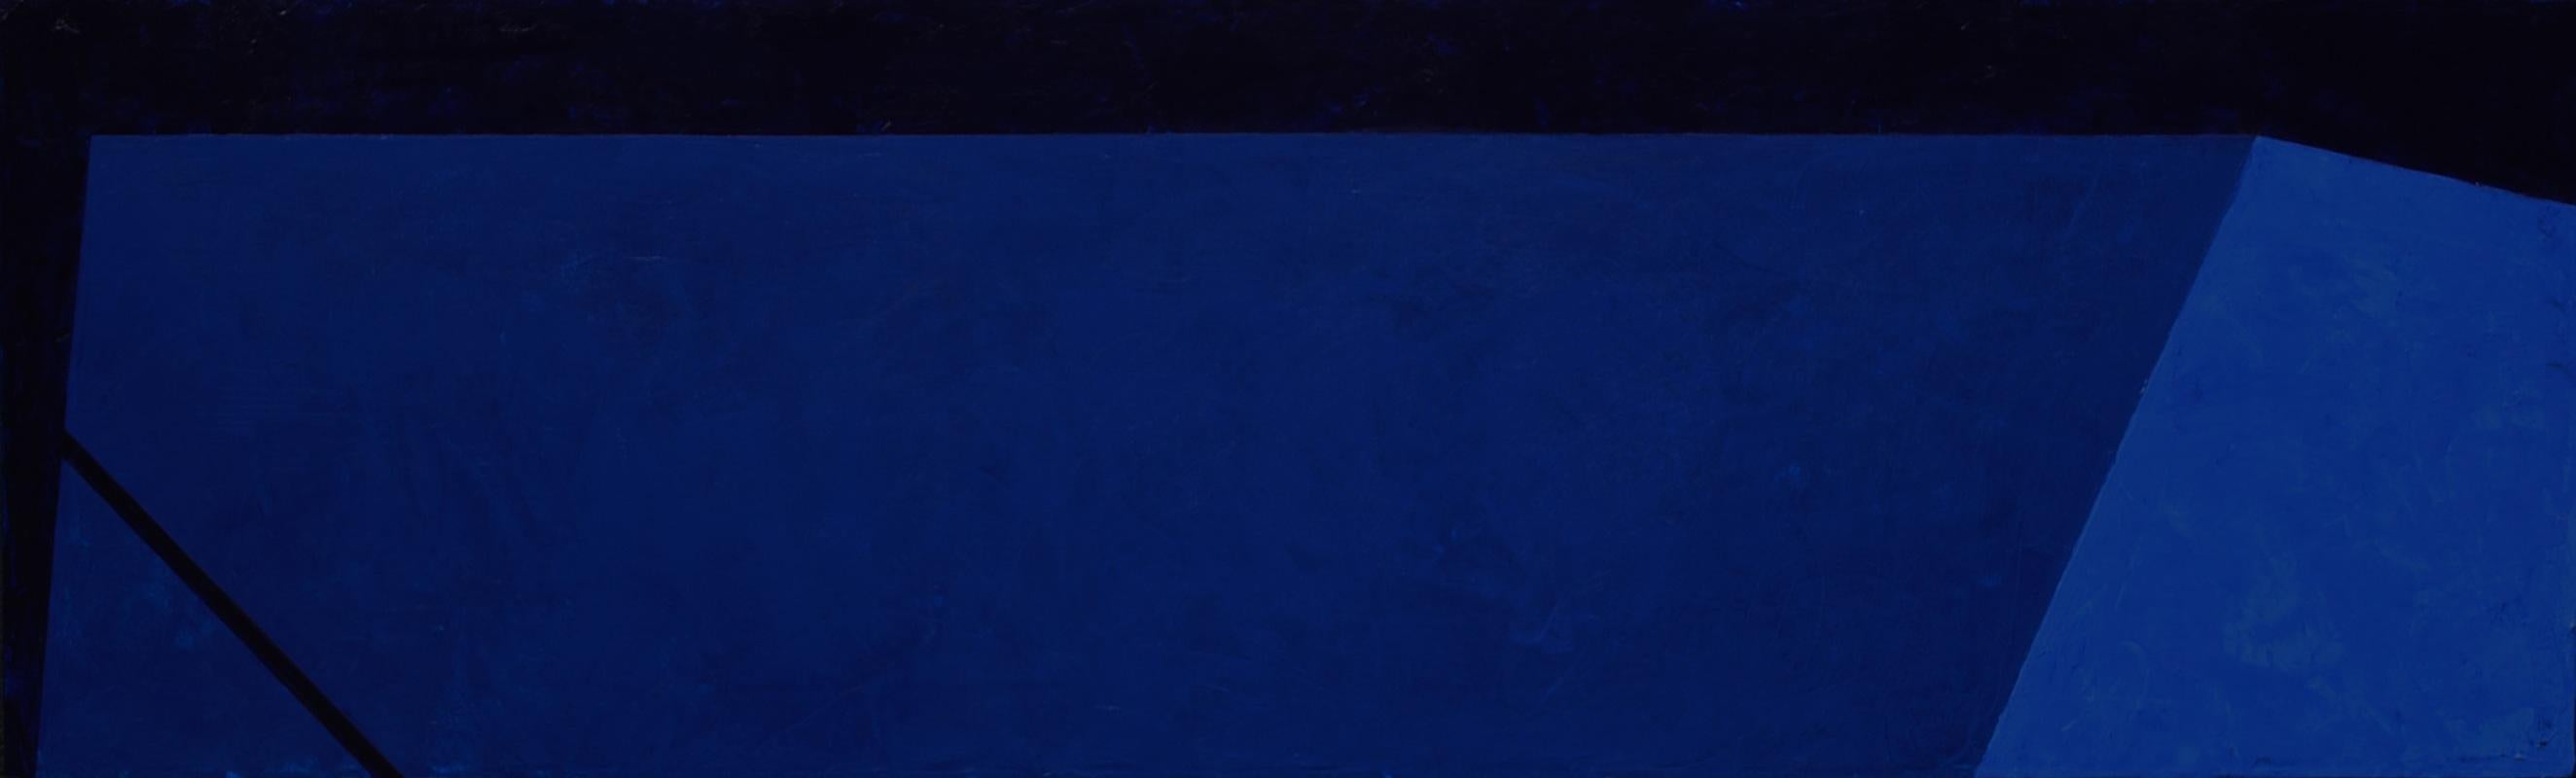 Macyn Bolt, Dark Pool I, acrylic on canvas, Minimalist, 18 x 60, 2018 For Sale 1